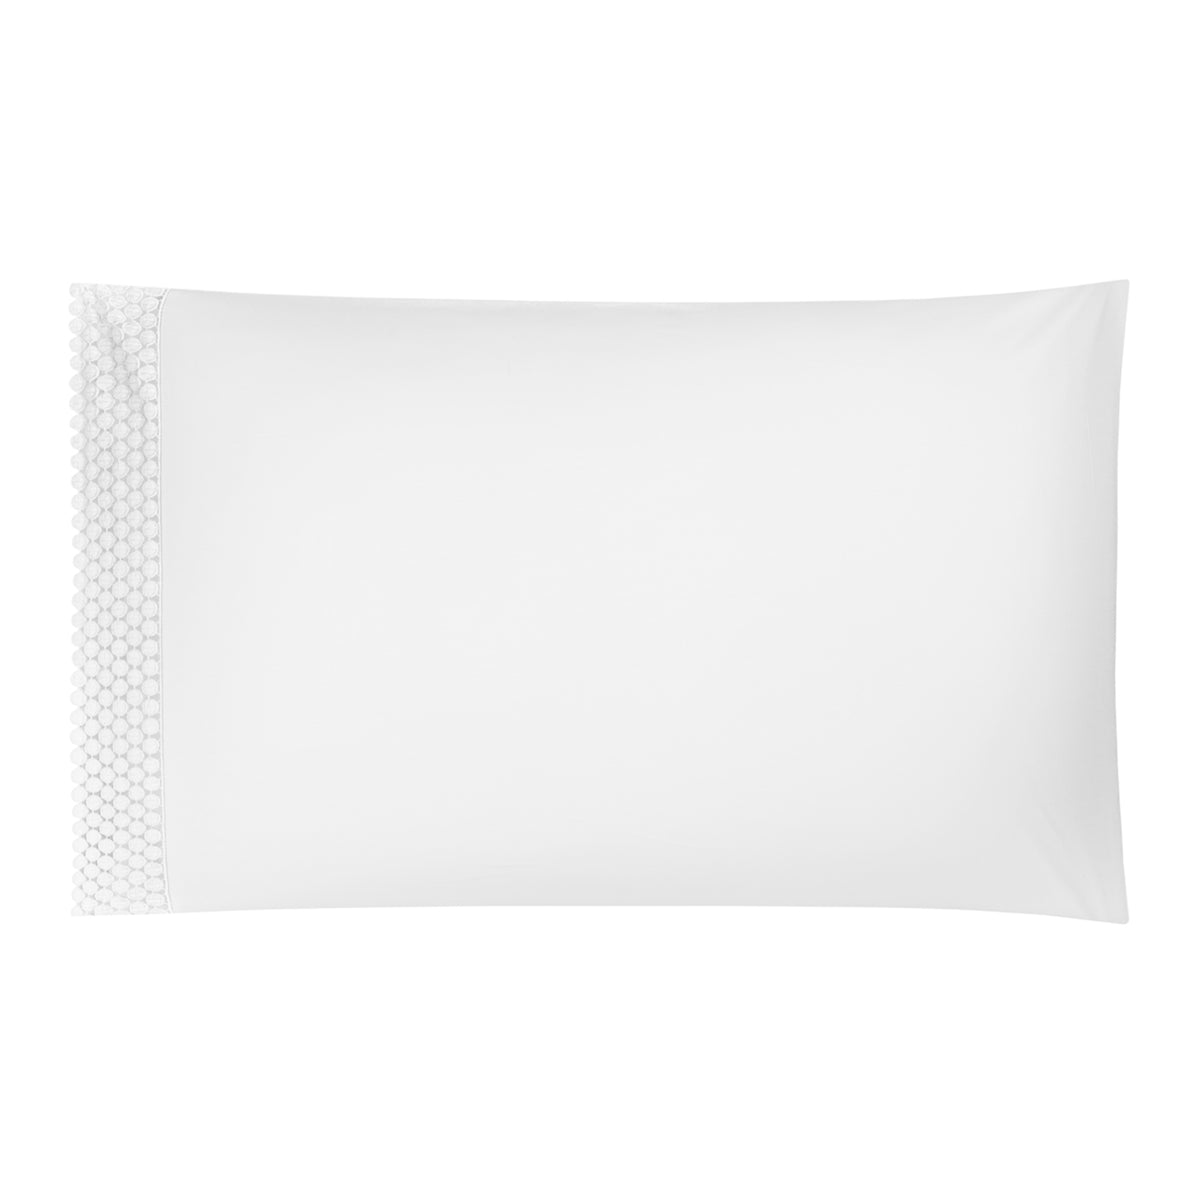 Silo of BOVI Magnolia Bedding Collection Pillowcase White/White Fine Linens